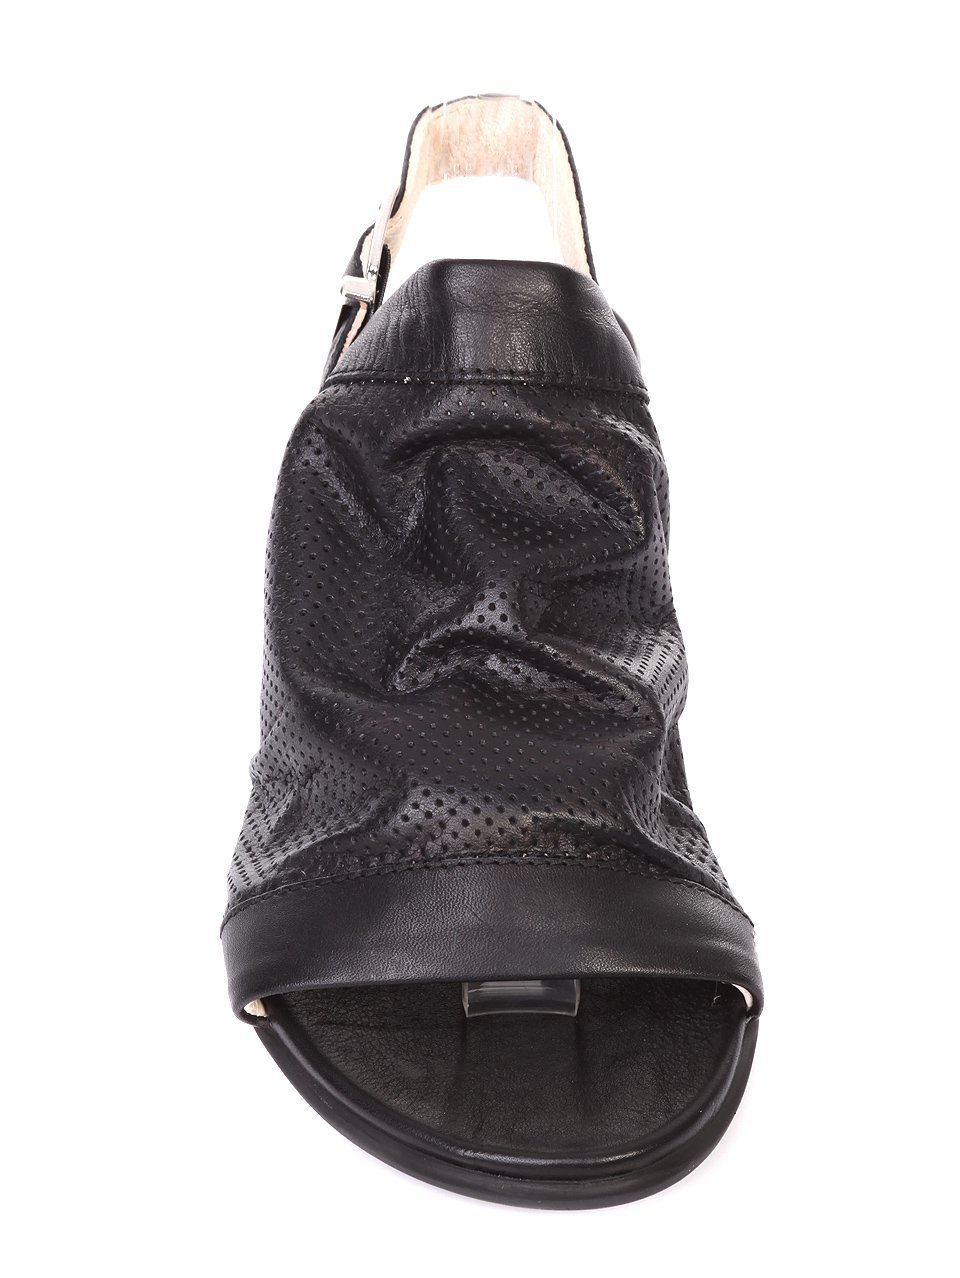 Ежедневни дамски сандали от естествена кожа 4AB-18503 black